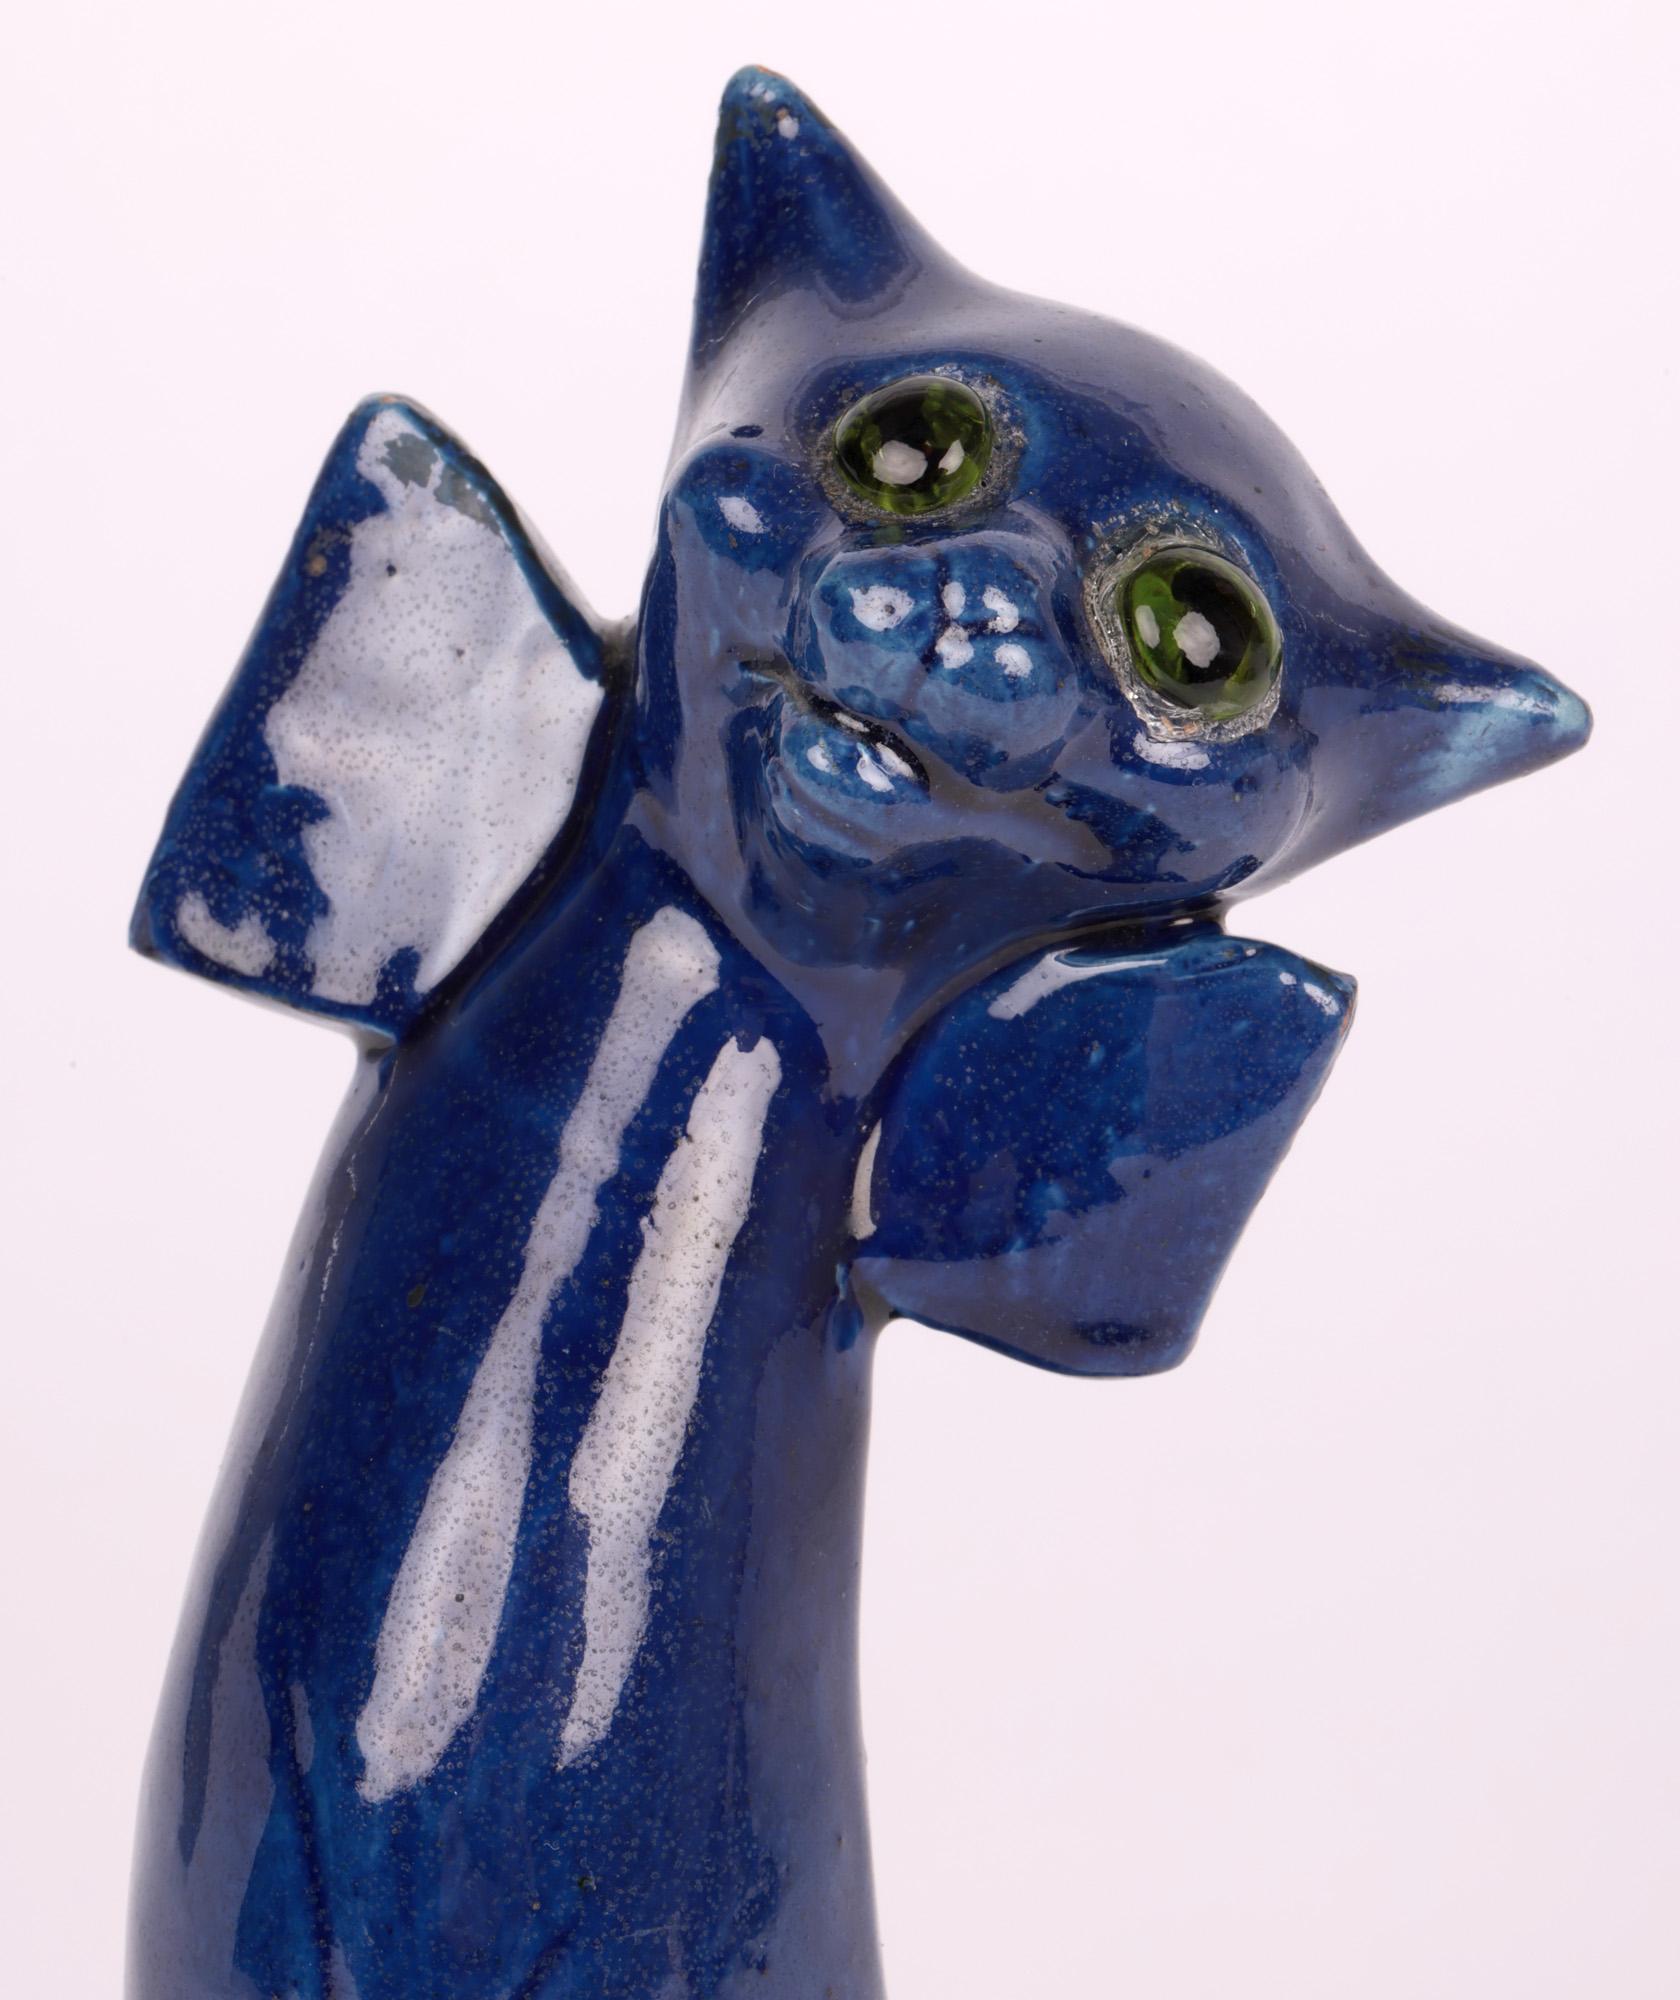 Une grande figurine inhabituelle en poterie d'art représentant un chat grotesque souriant avec des yeux en verre, d'après un design original de Blanche Vulliamy réalisé par Charles Hubert Brannam et datant d'environ 1905.
La poterie Brannam a été